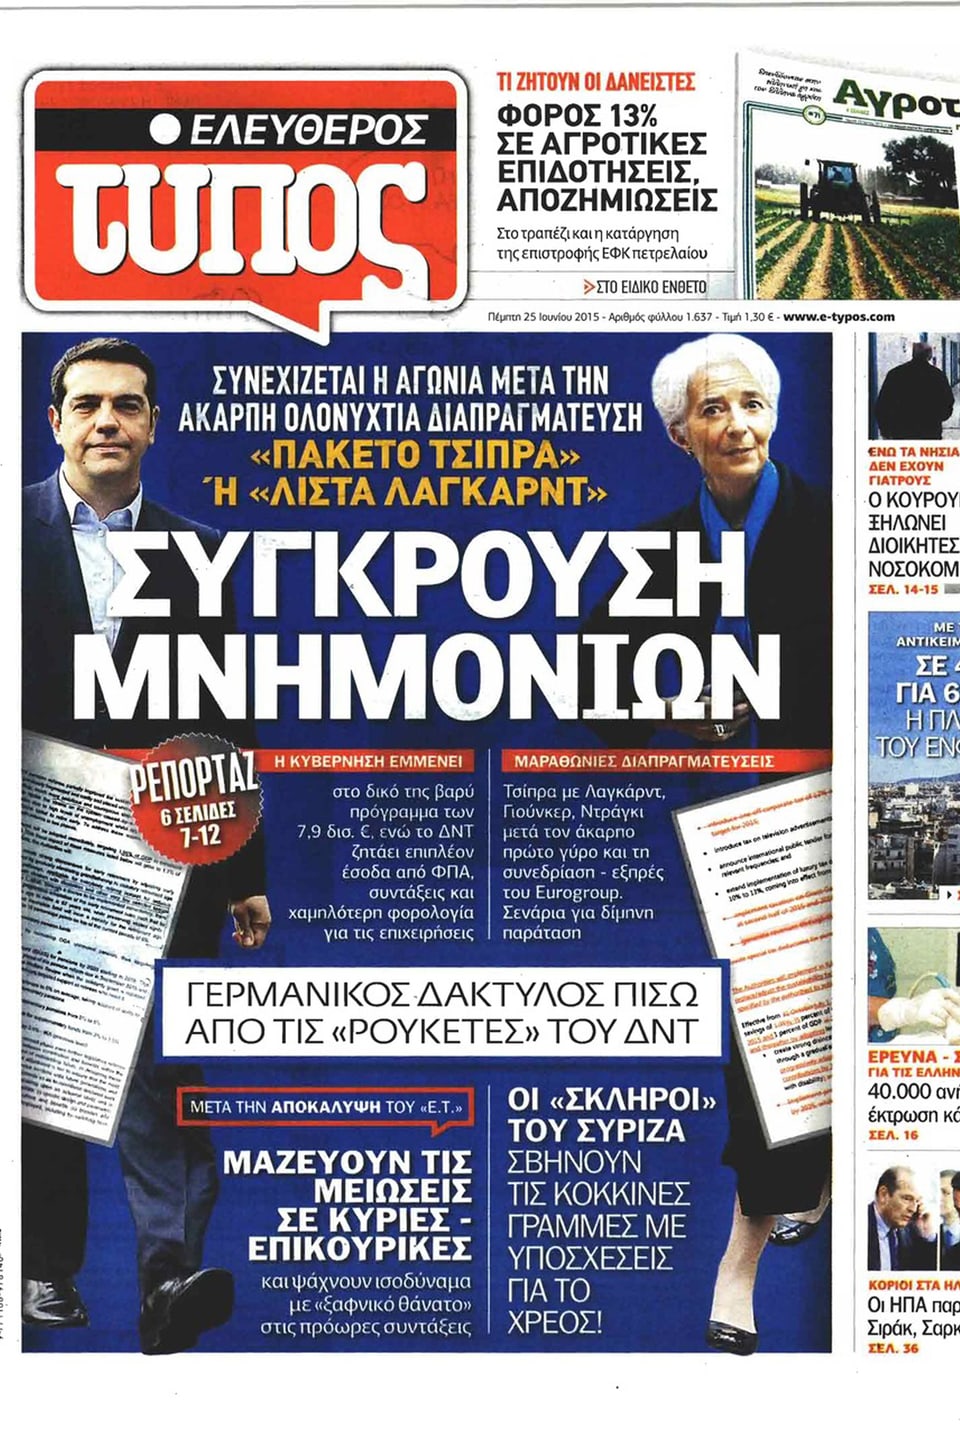 Zeitungskopf der heutigen Nummer. Im Bild Christione Lagarde und Tsipras.